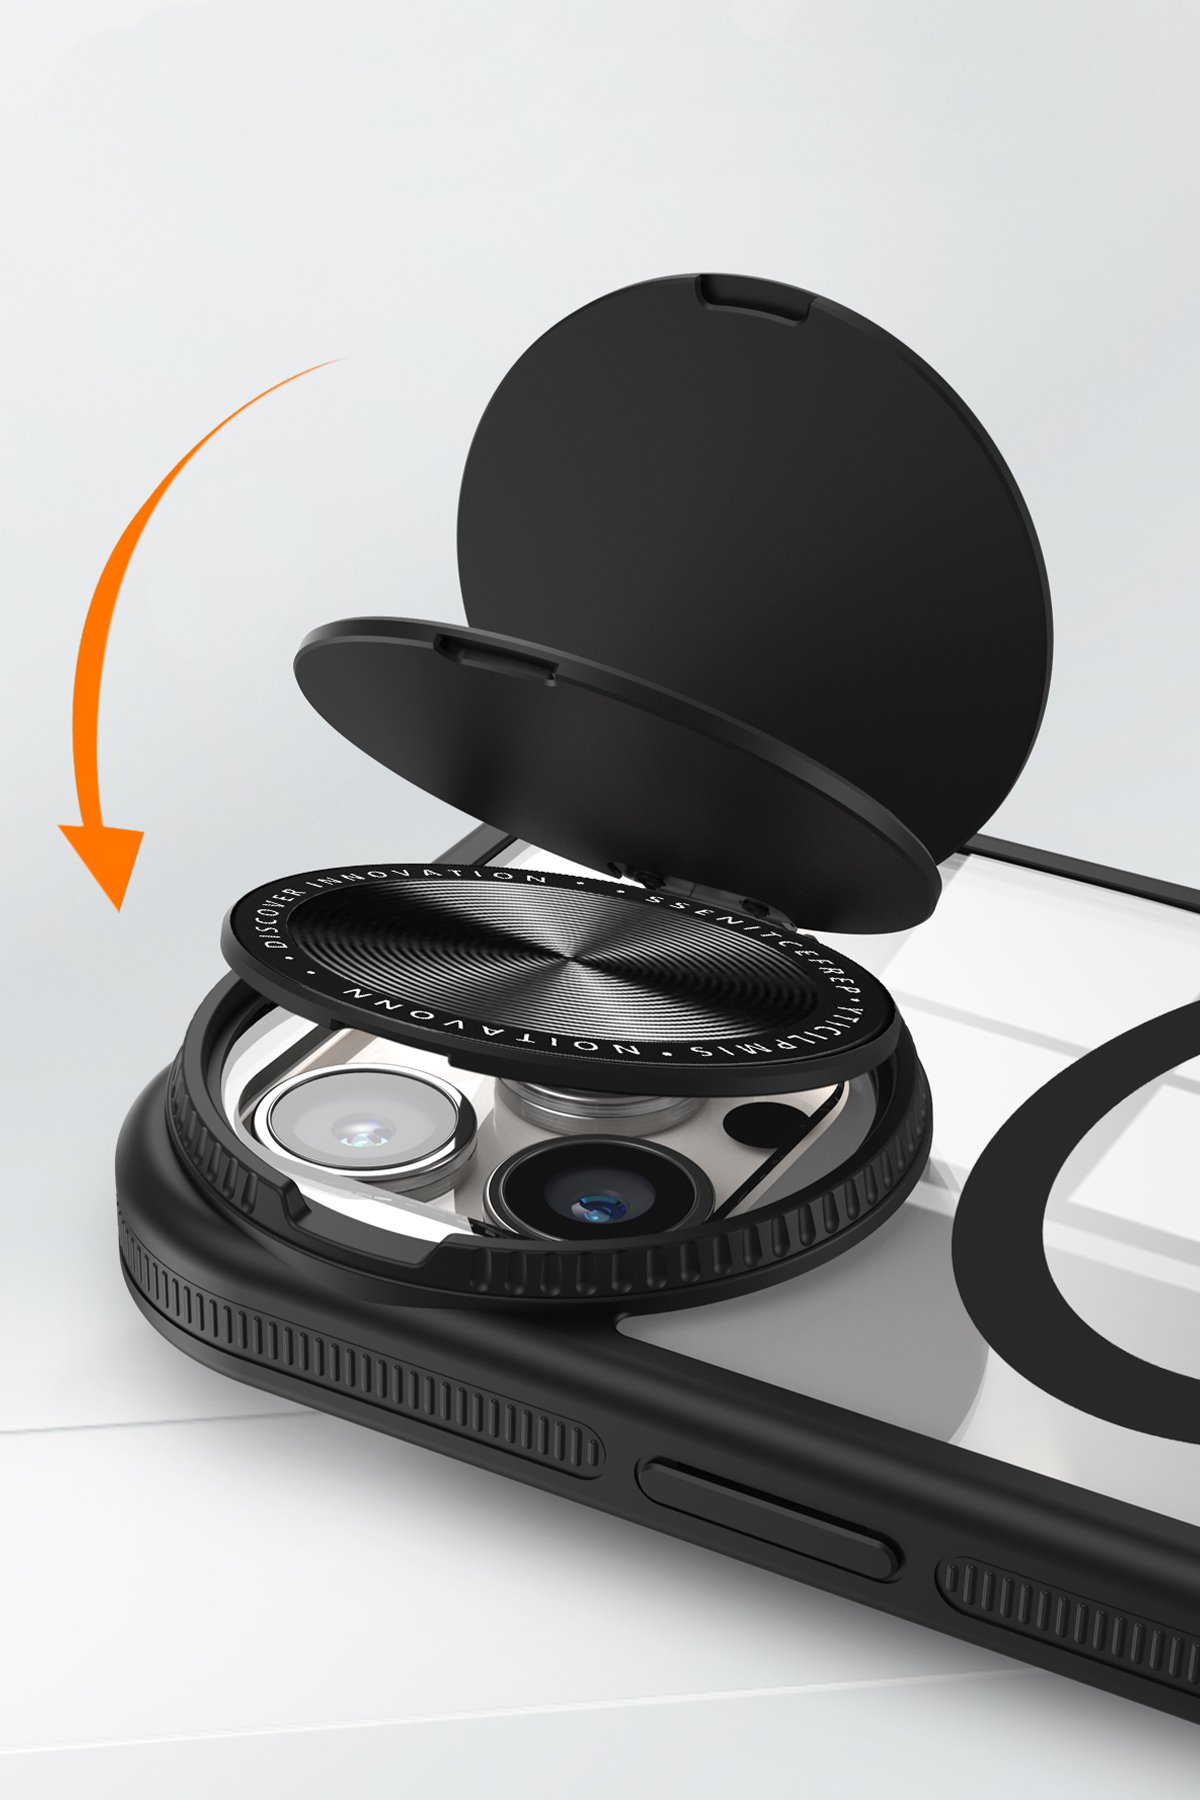 Newface iPhone 15 Pro Max Kılıf Pars Lens Yüzüklü Silikon - Gümüş